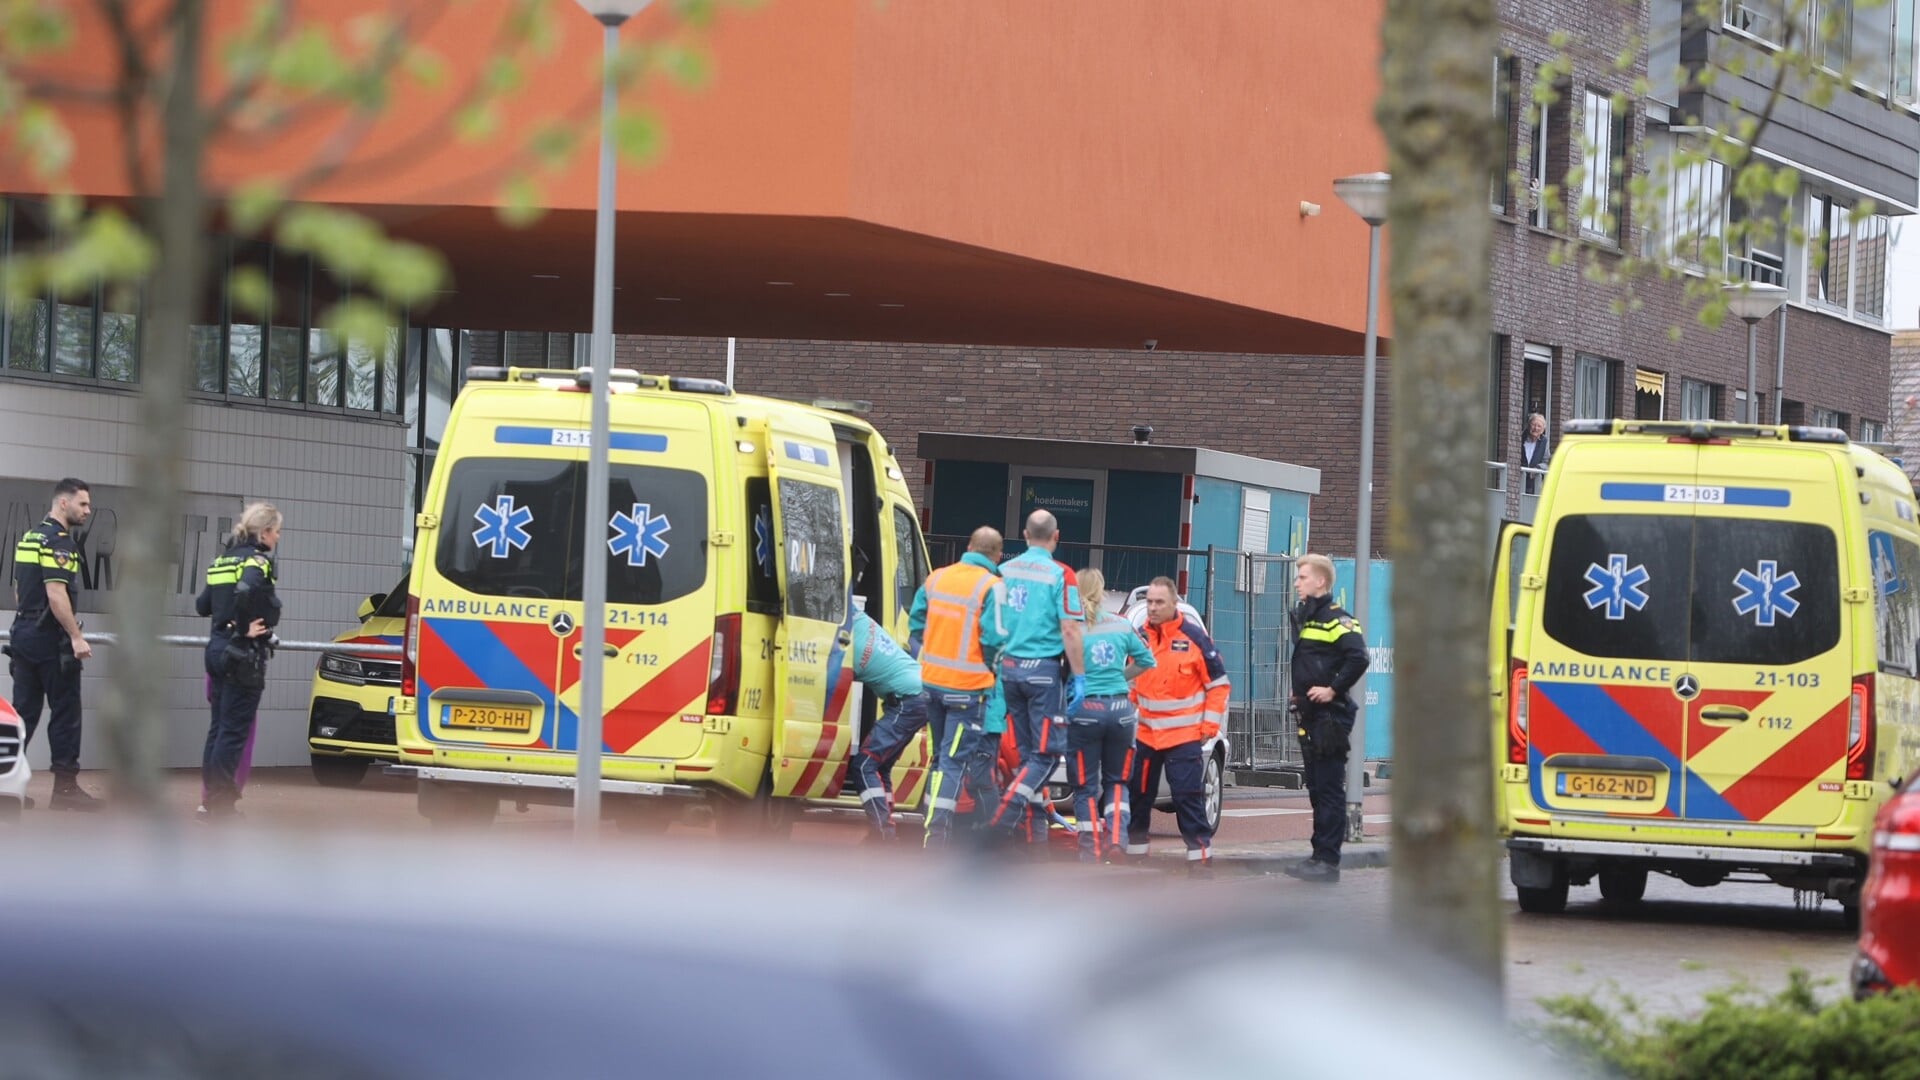 De hulpdiensten hebben vandaag rond 11.30 uur aan de Deltalaan in de wijk de Groote Wielen in Rosmalen een kind van 4 jaar oud gereanimeerd nadat deze in het water was gevallen.